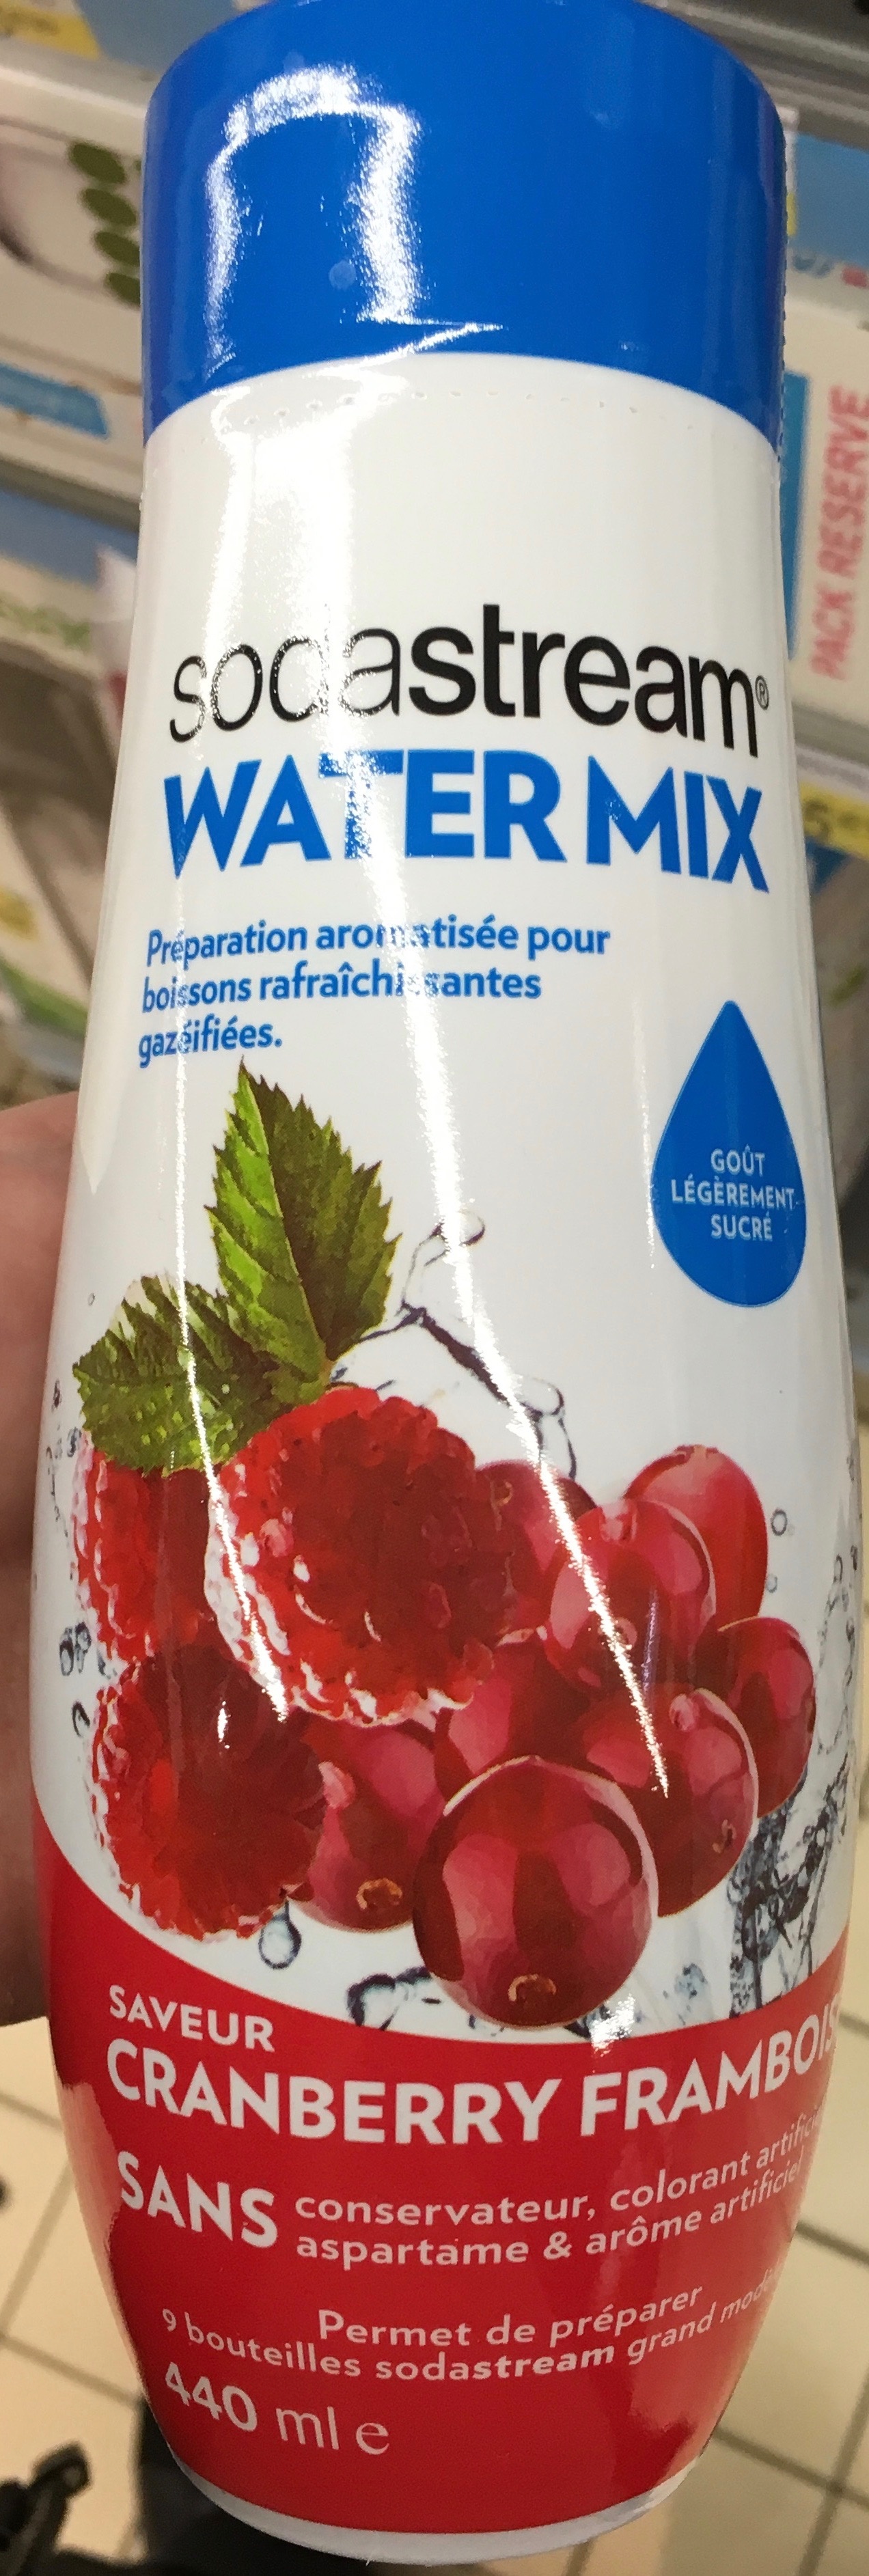 Water Mix saveur Cranberry Framboise - Produit